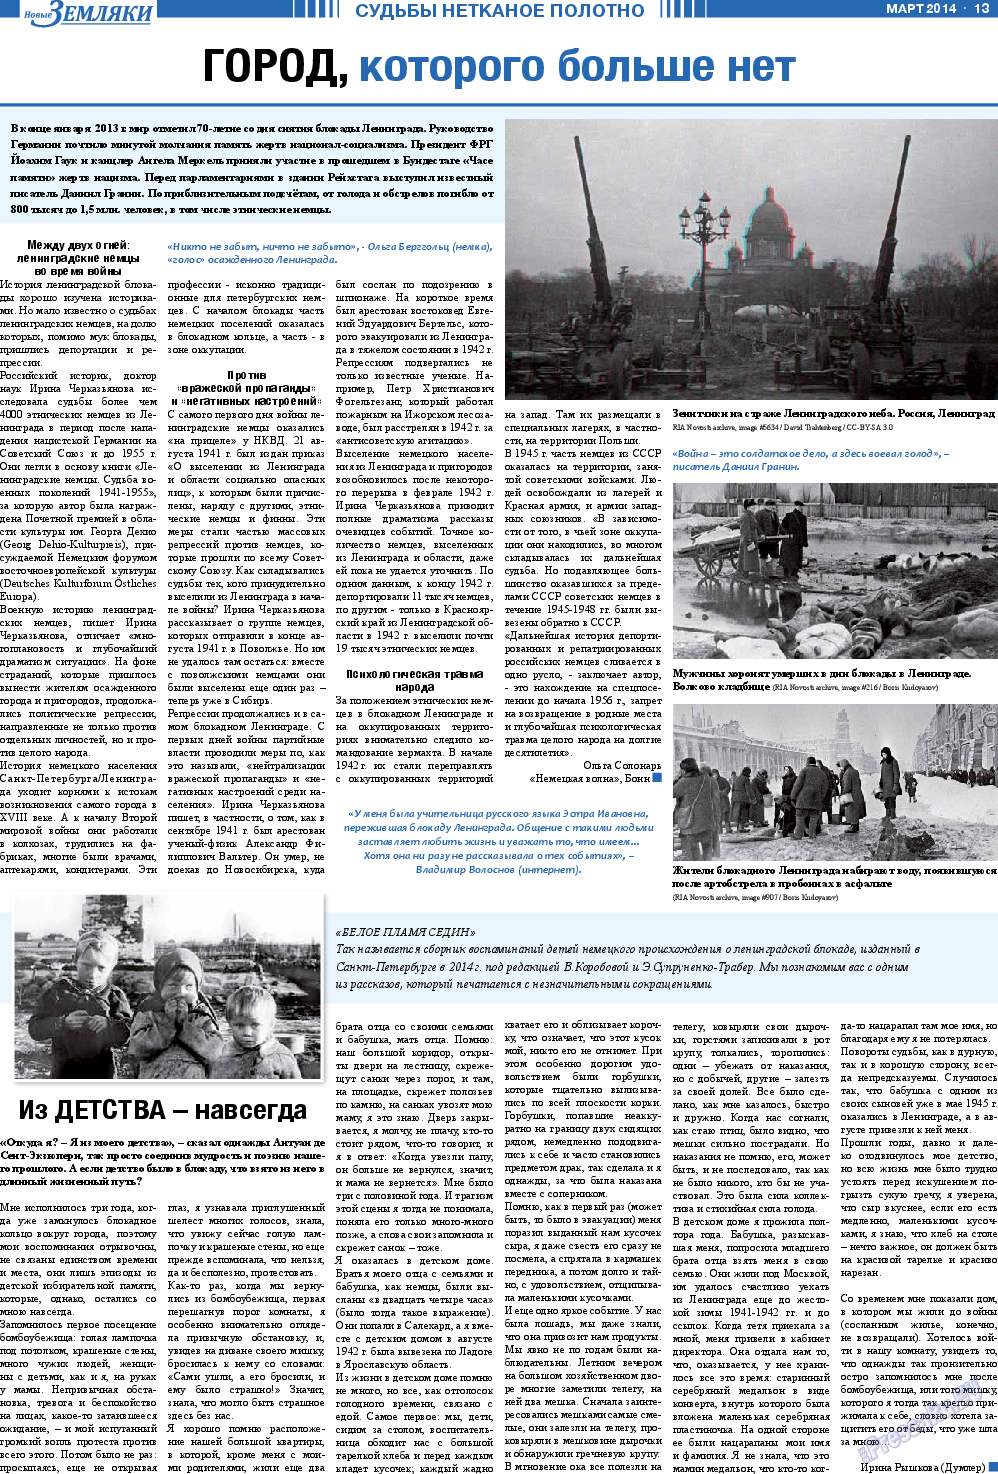 Новые Земляки, газета. 2014 №3 стр.13